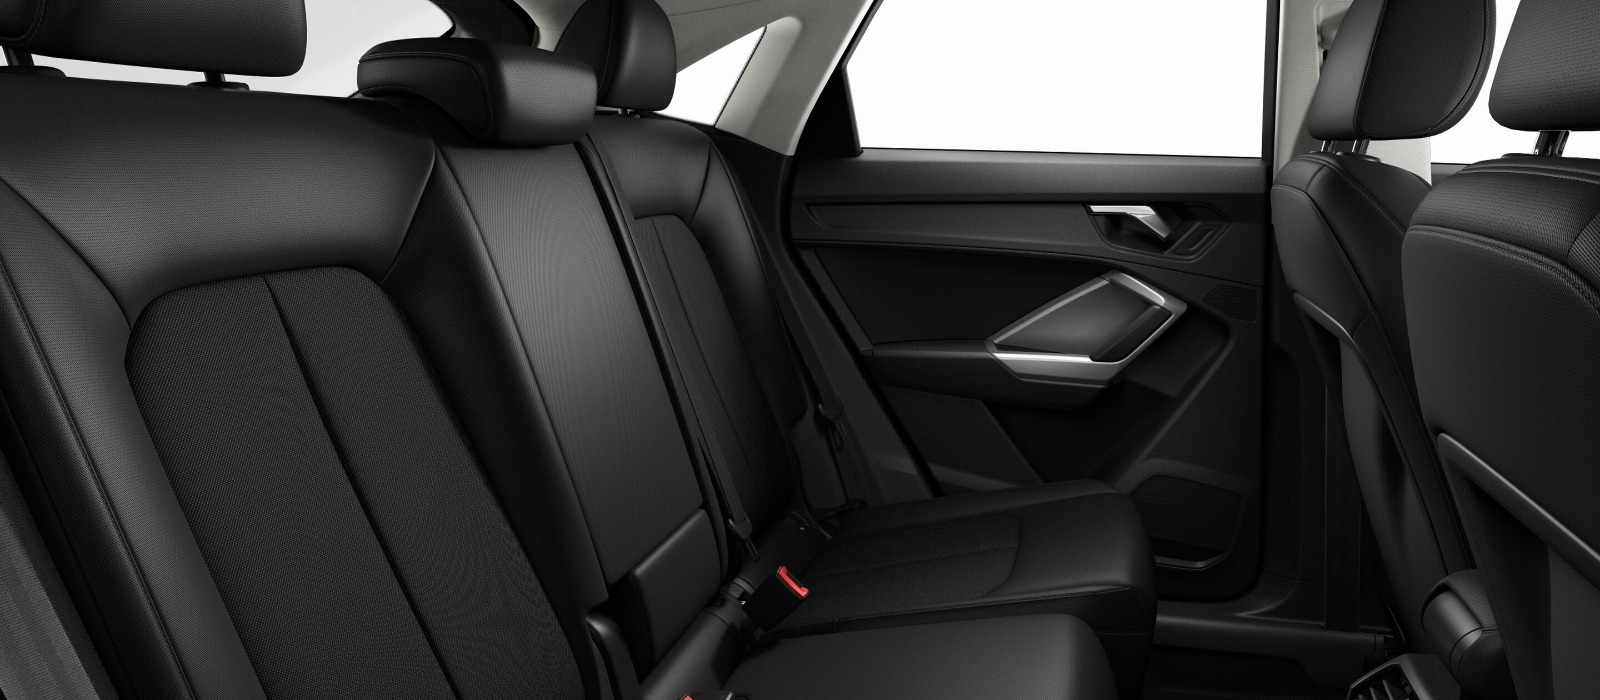 Renting Audi Q3 Sportback Interior